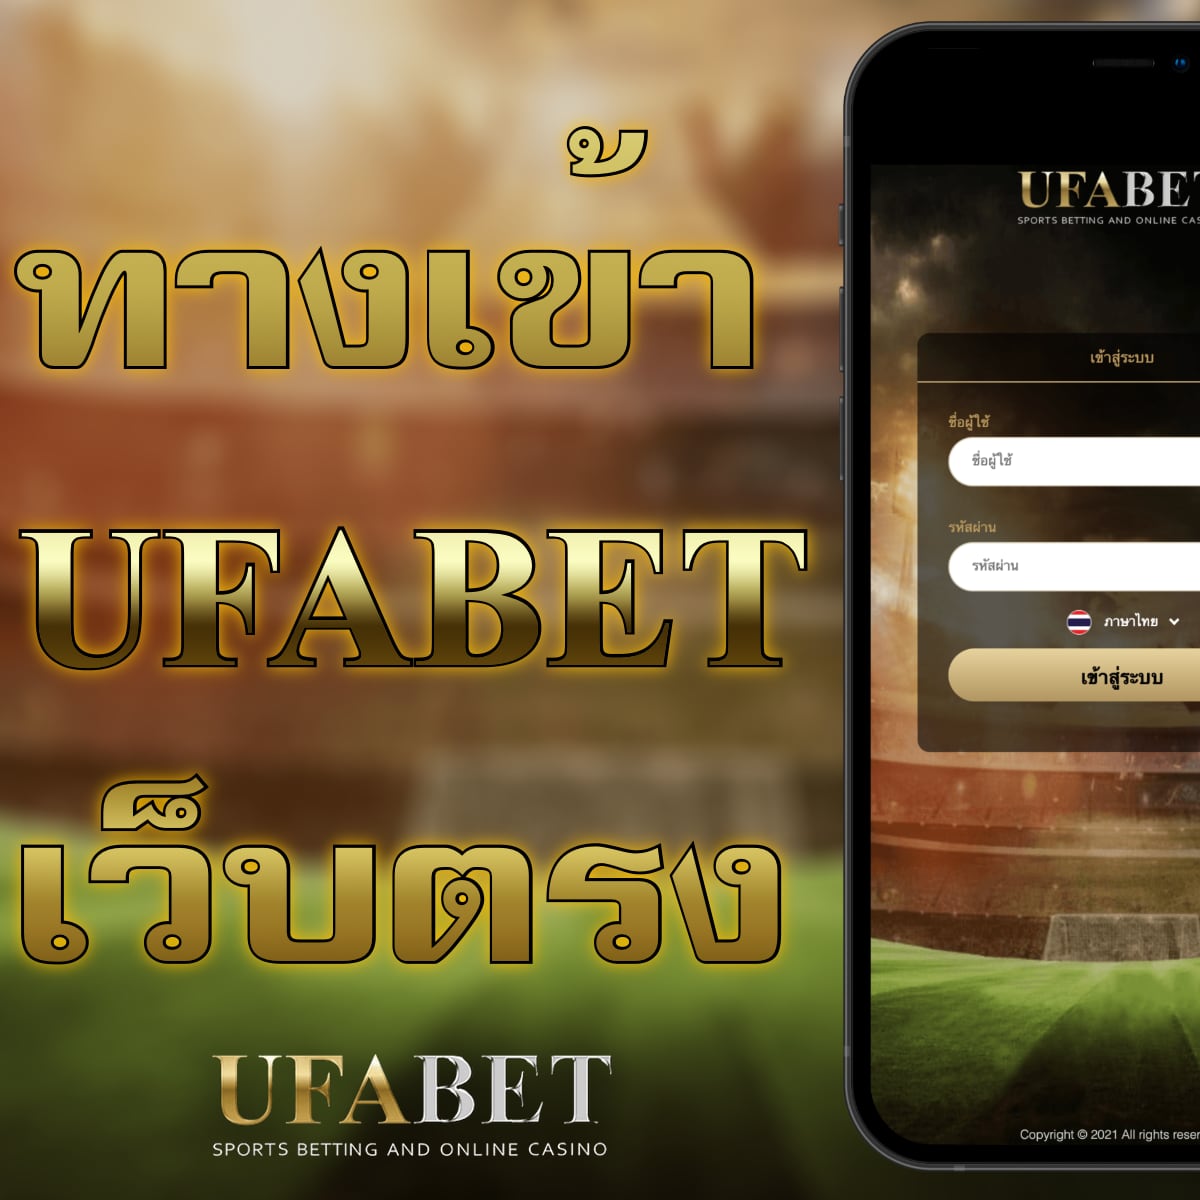 ufabet เข้าสู่ระบบ เดิมพันเกมพนันออนไลน์ในหลายรูปแบบ